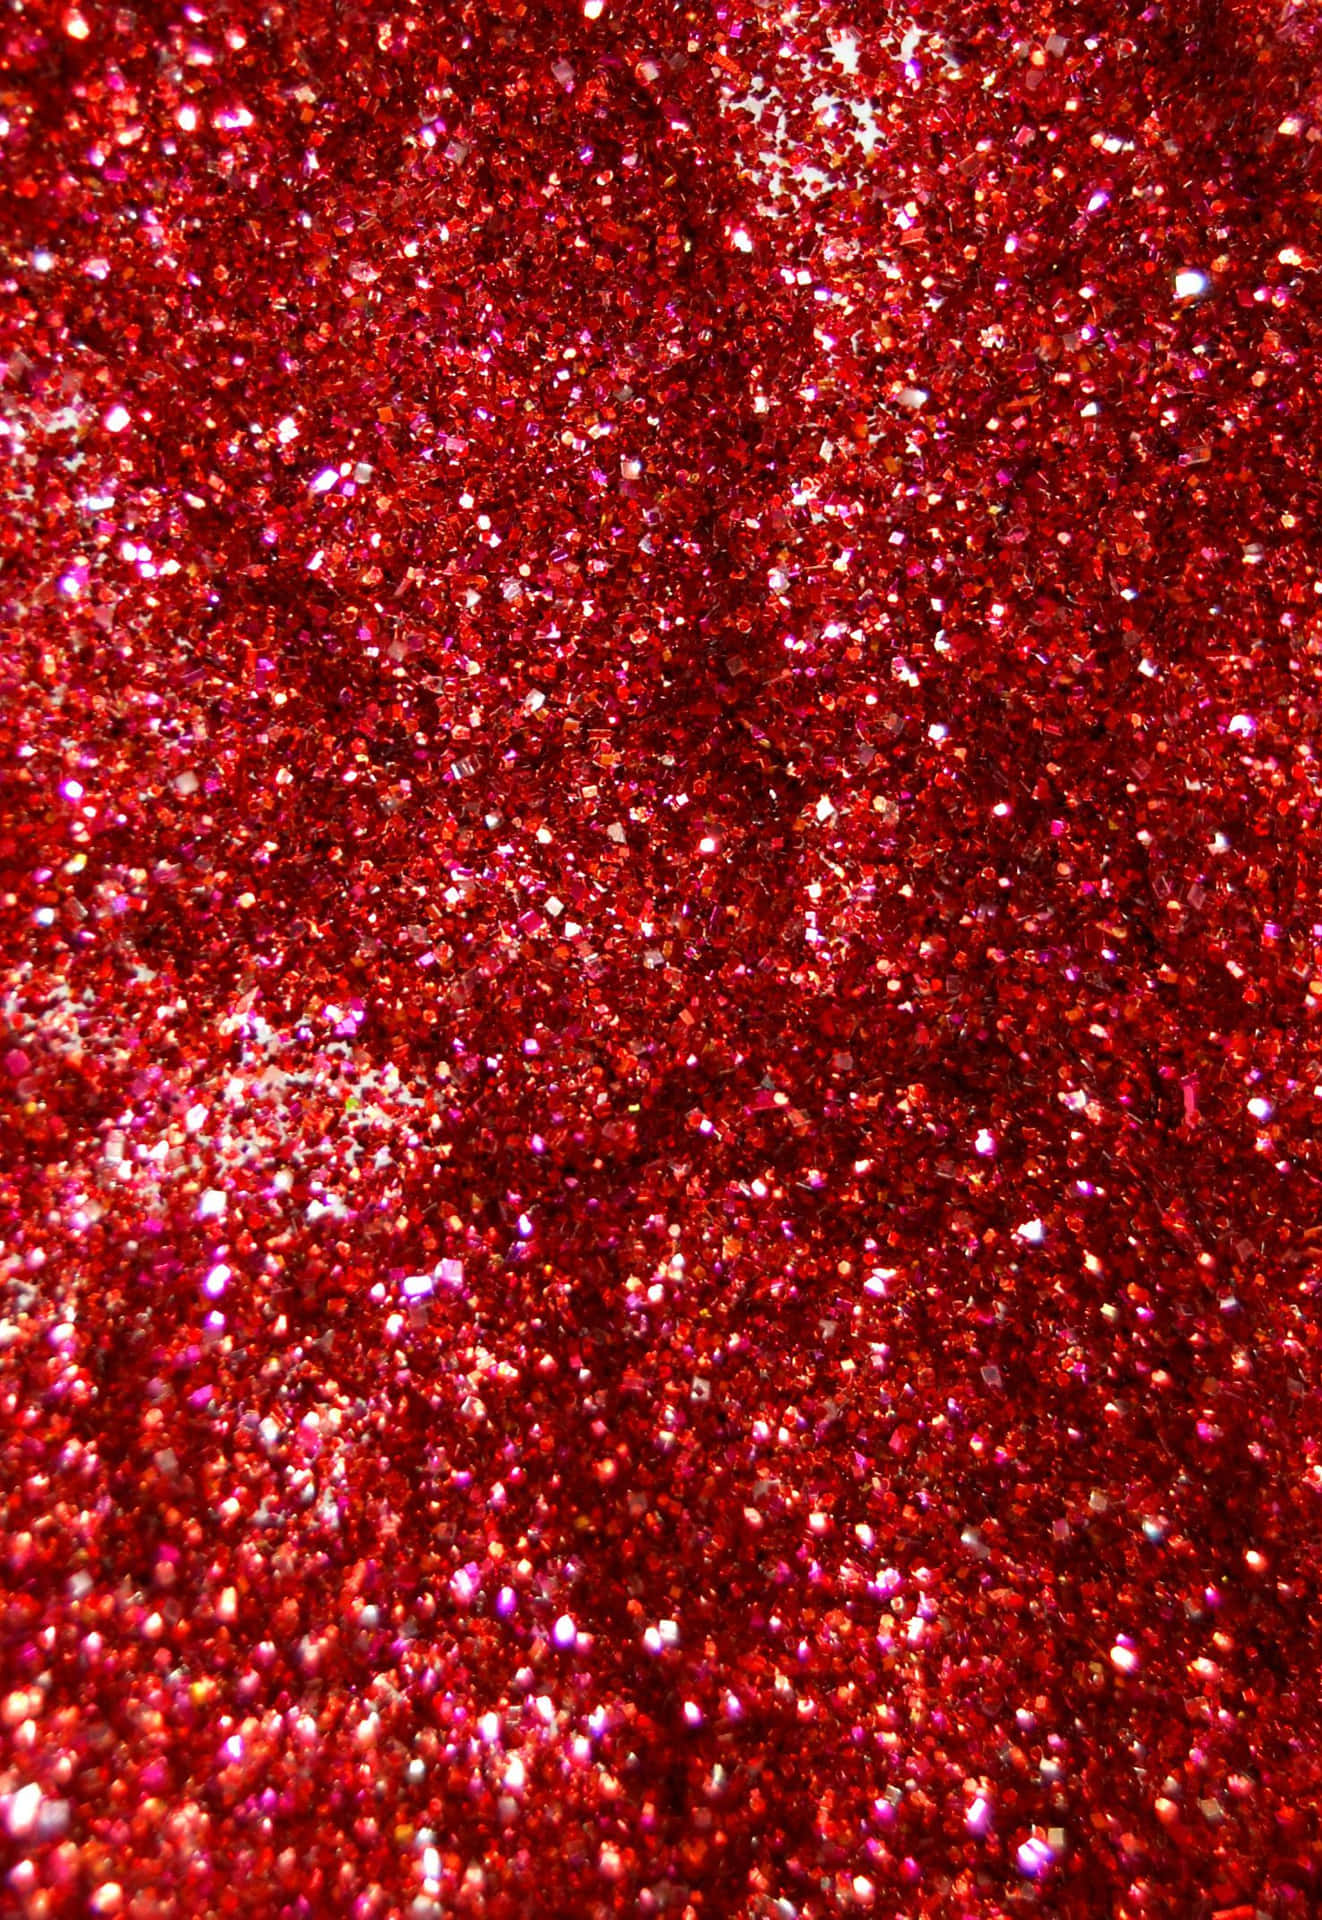 Red Glitter Wallpaper  Red glitter wallpaper, Glitter wallpaper, Red  glitter background